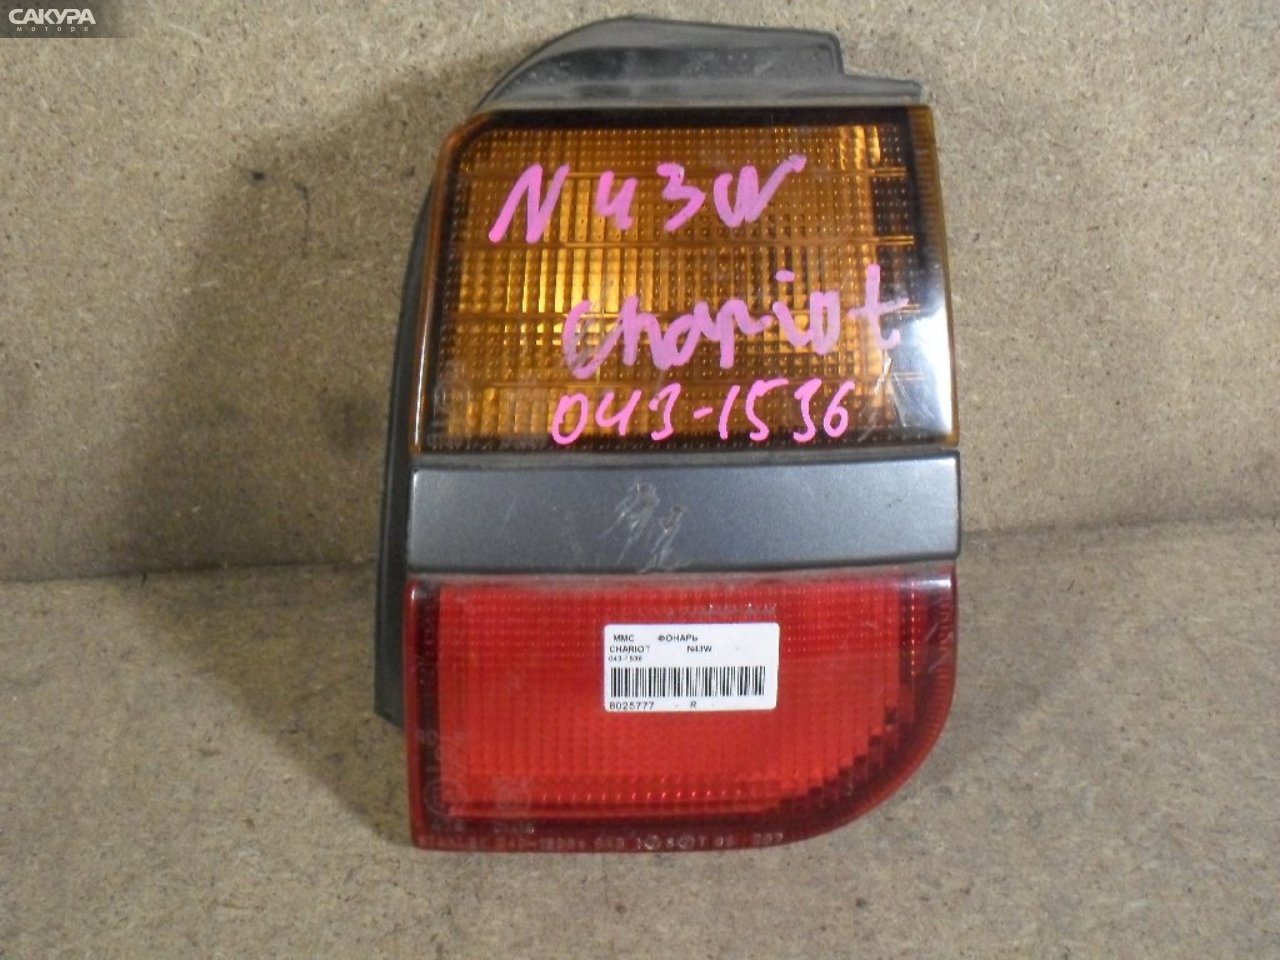 Фонарь стоп-сигнала правый Mitsubishi Chariot N43W 043-1536: купить в Сакура Абакан.